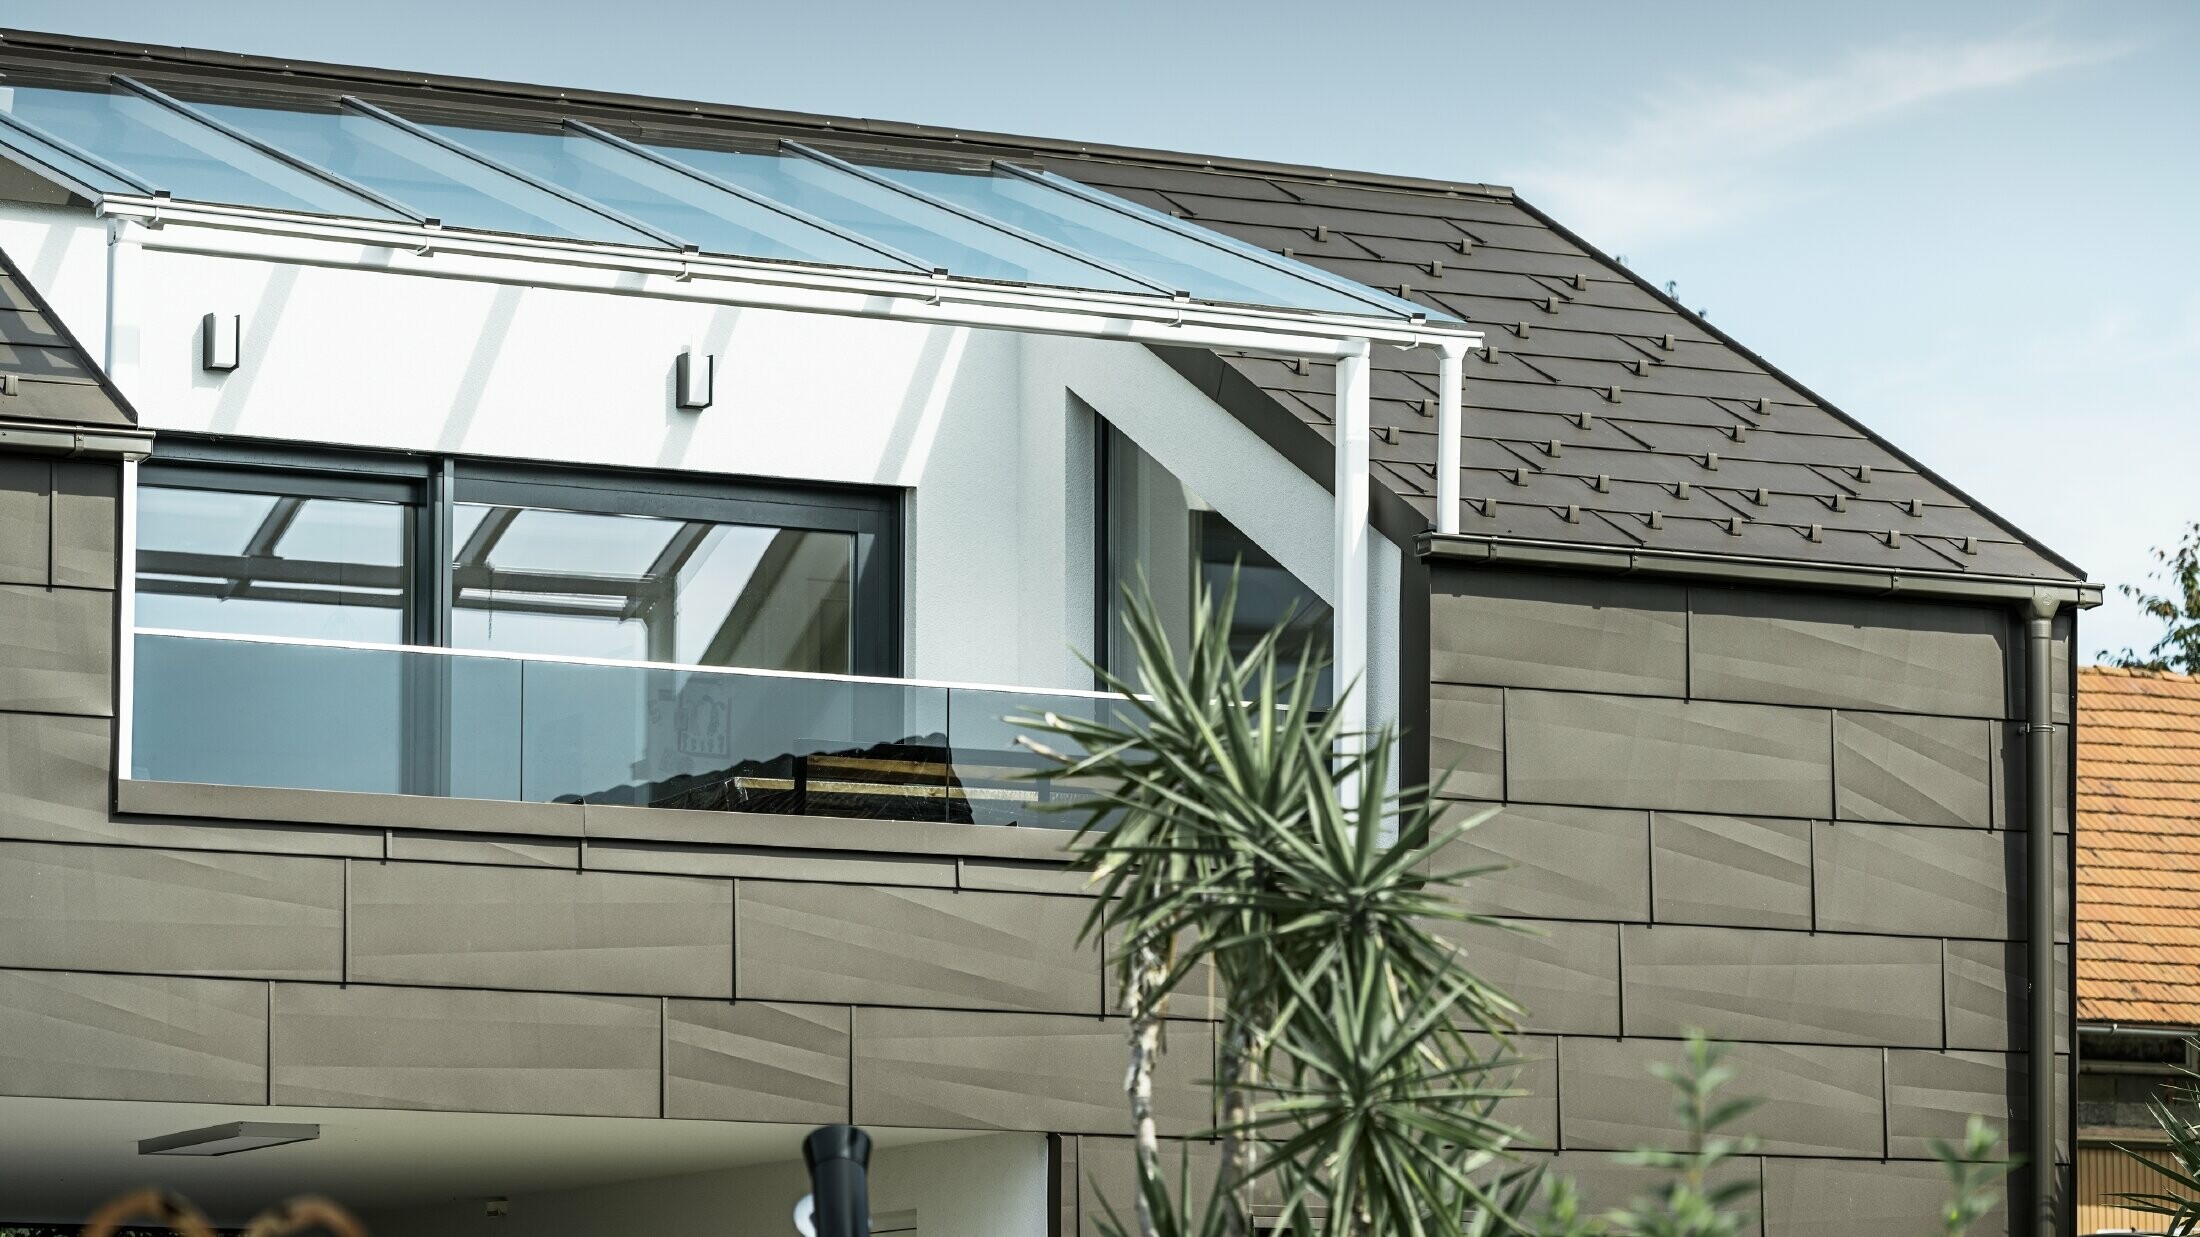 Dogradnja s krovnom terasom obložena PREFA cjelovitim sustavom, na krovu i fasadi upotrijebljeni su PREFA krovni i fasadni panel FX.12. Pored toga, za krovnu odvodnju primijenjen je PREFA sandučasti žlijeb s PREFA odvodnom cijevi i opsežnim priborom u smeđoj boji.